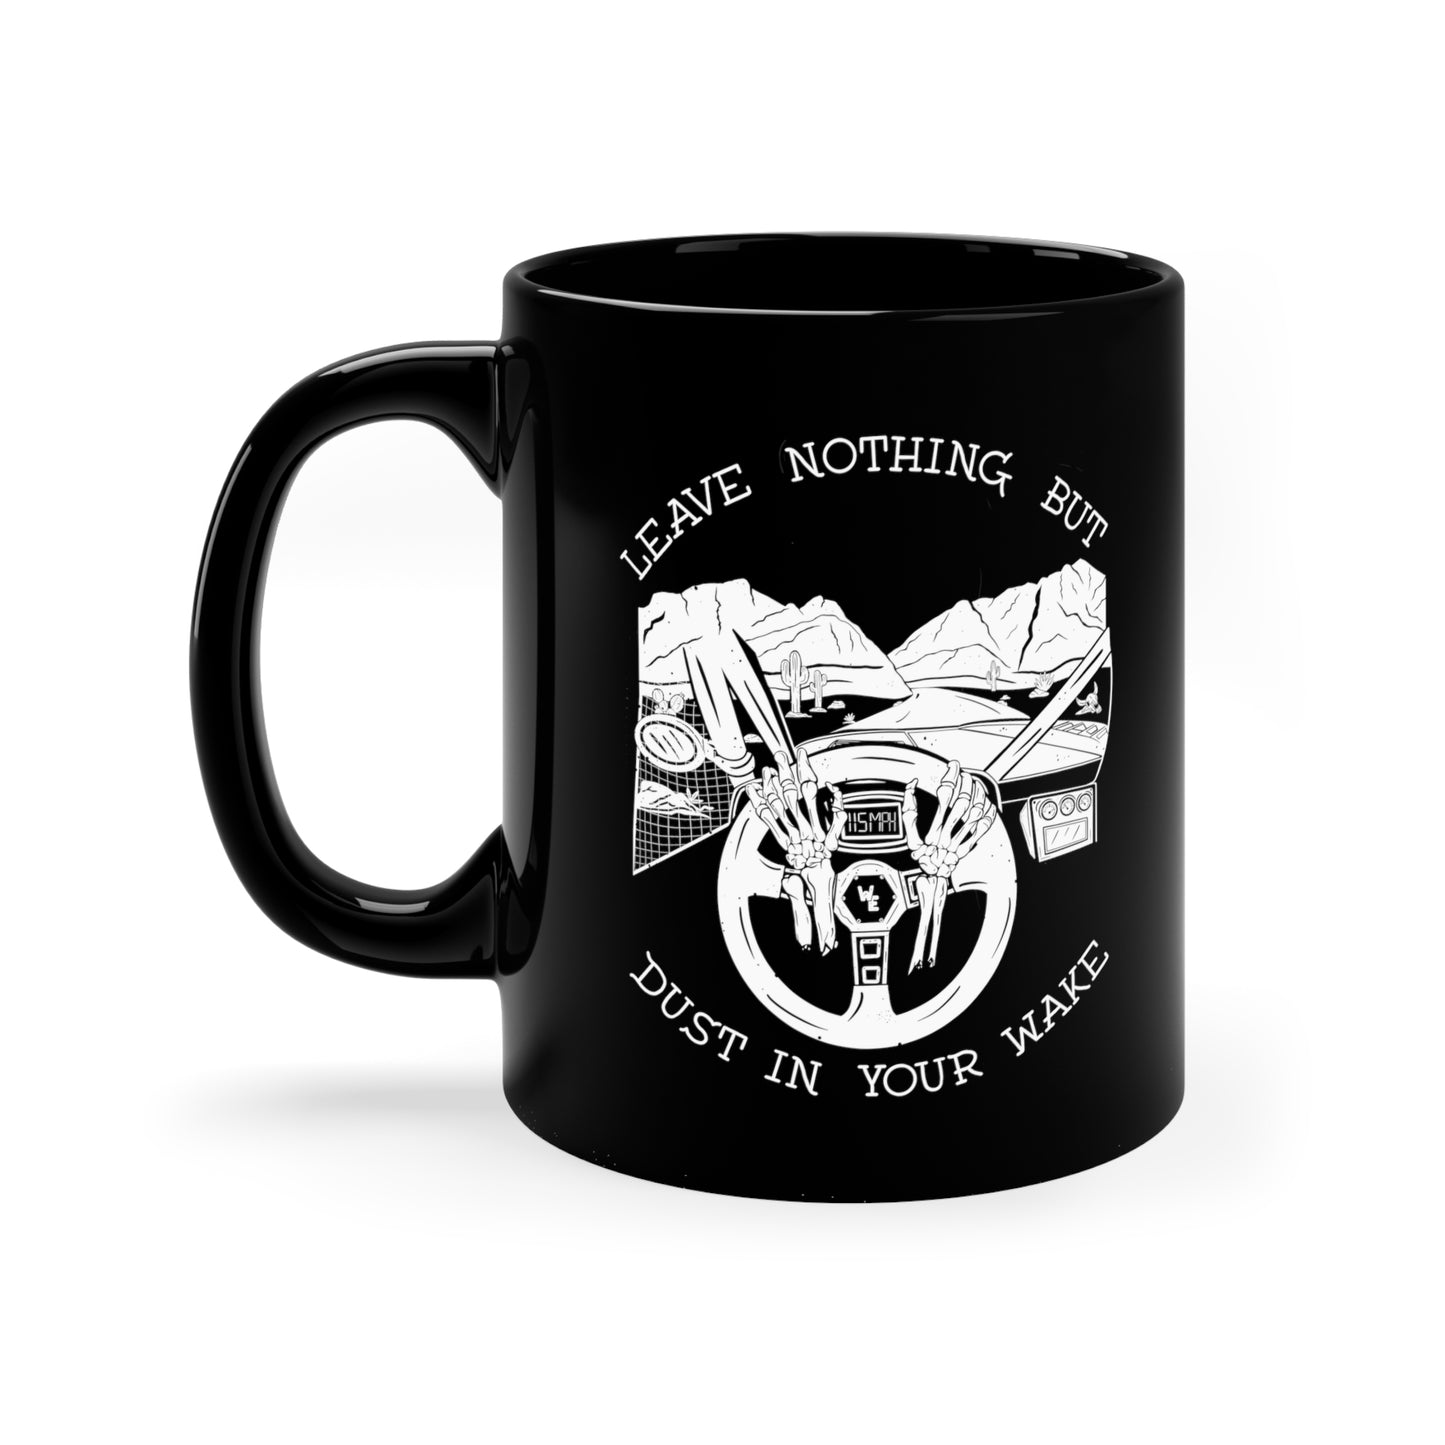 Leave Nothing Mug